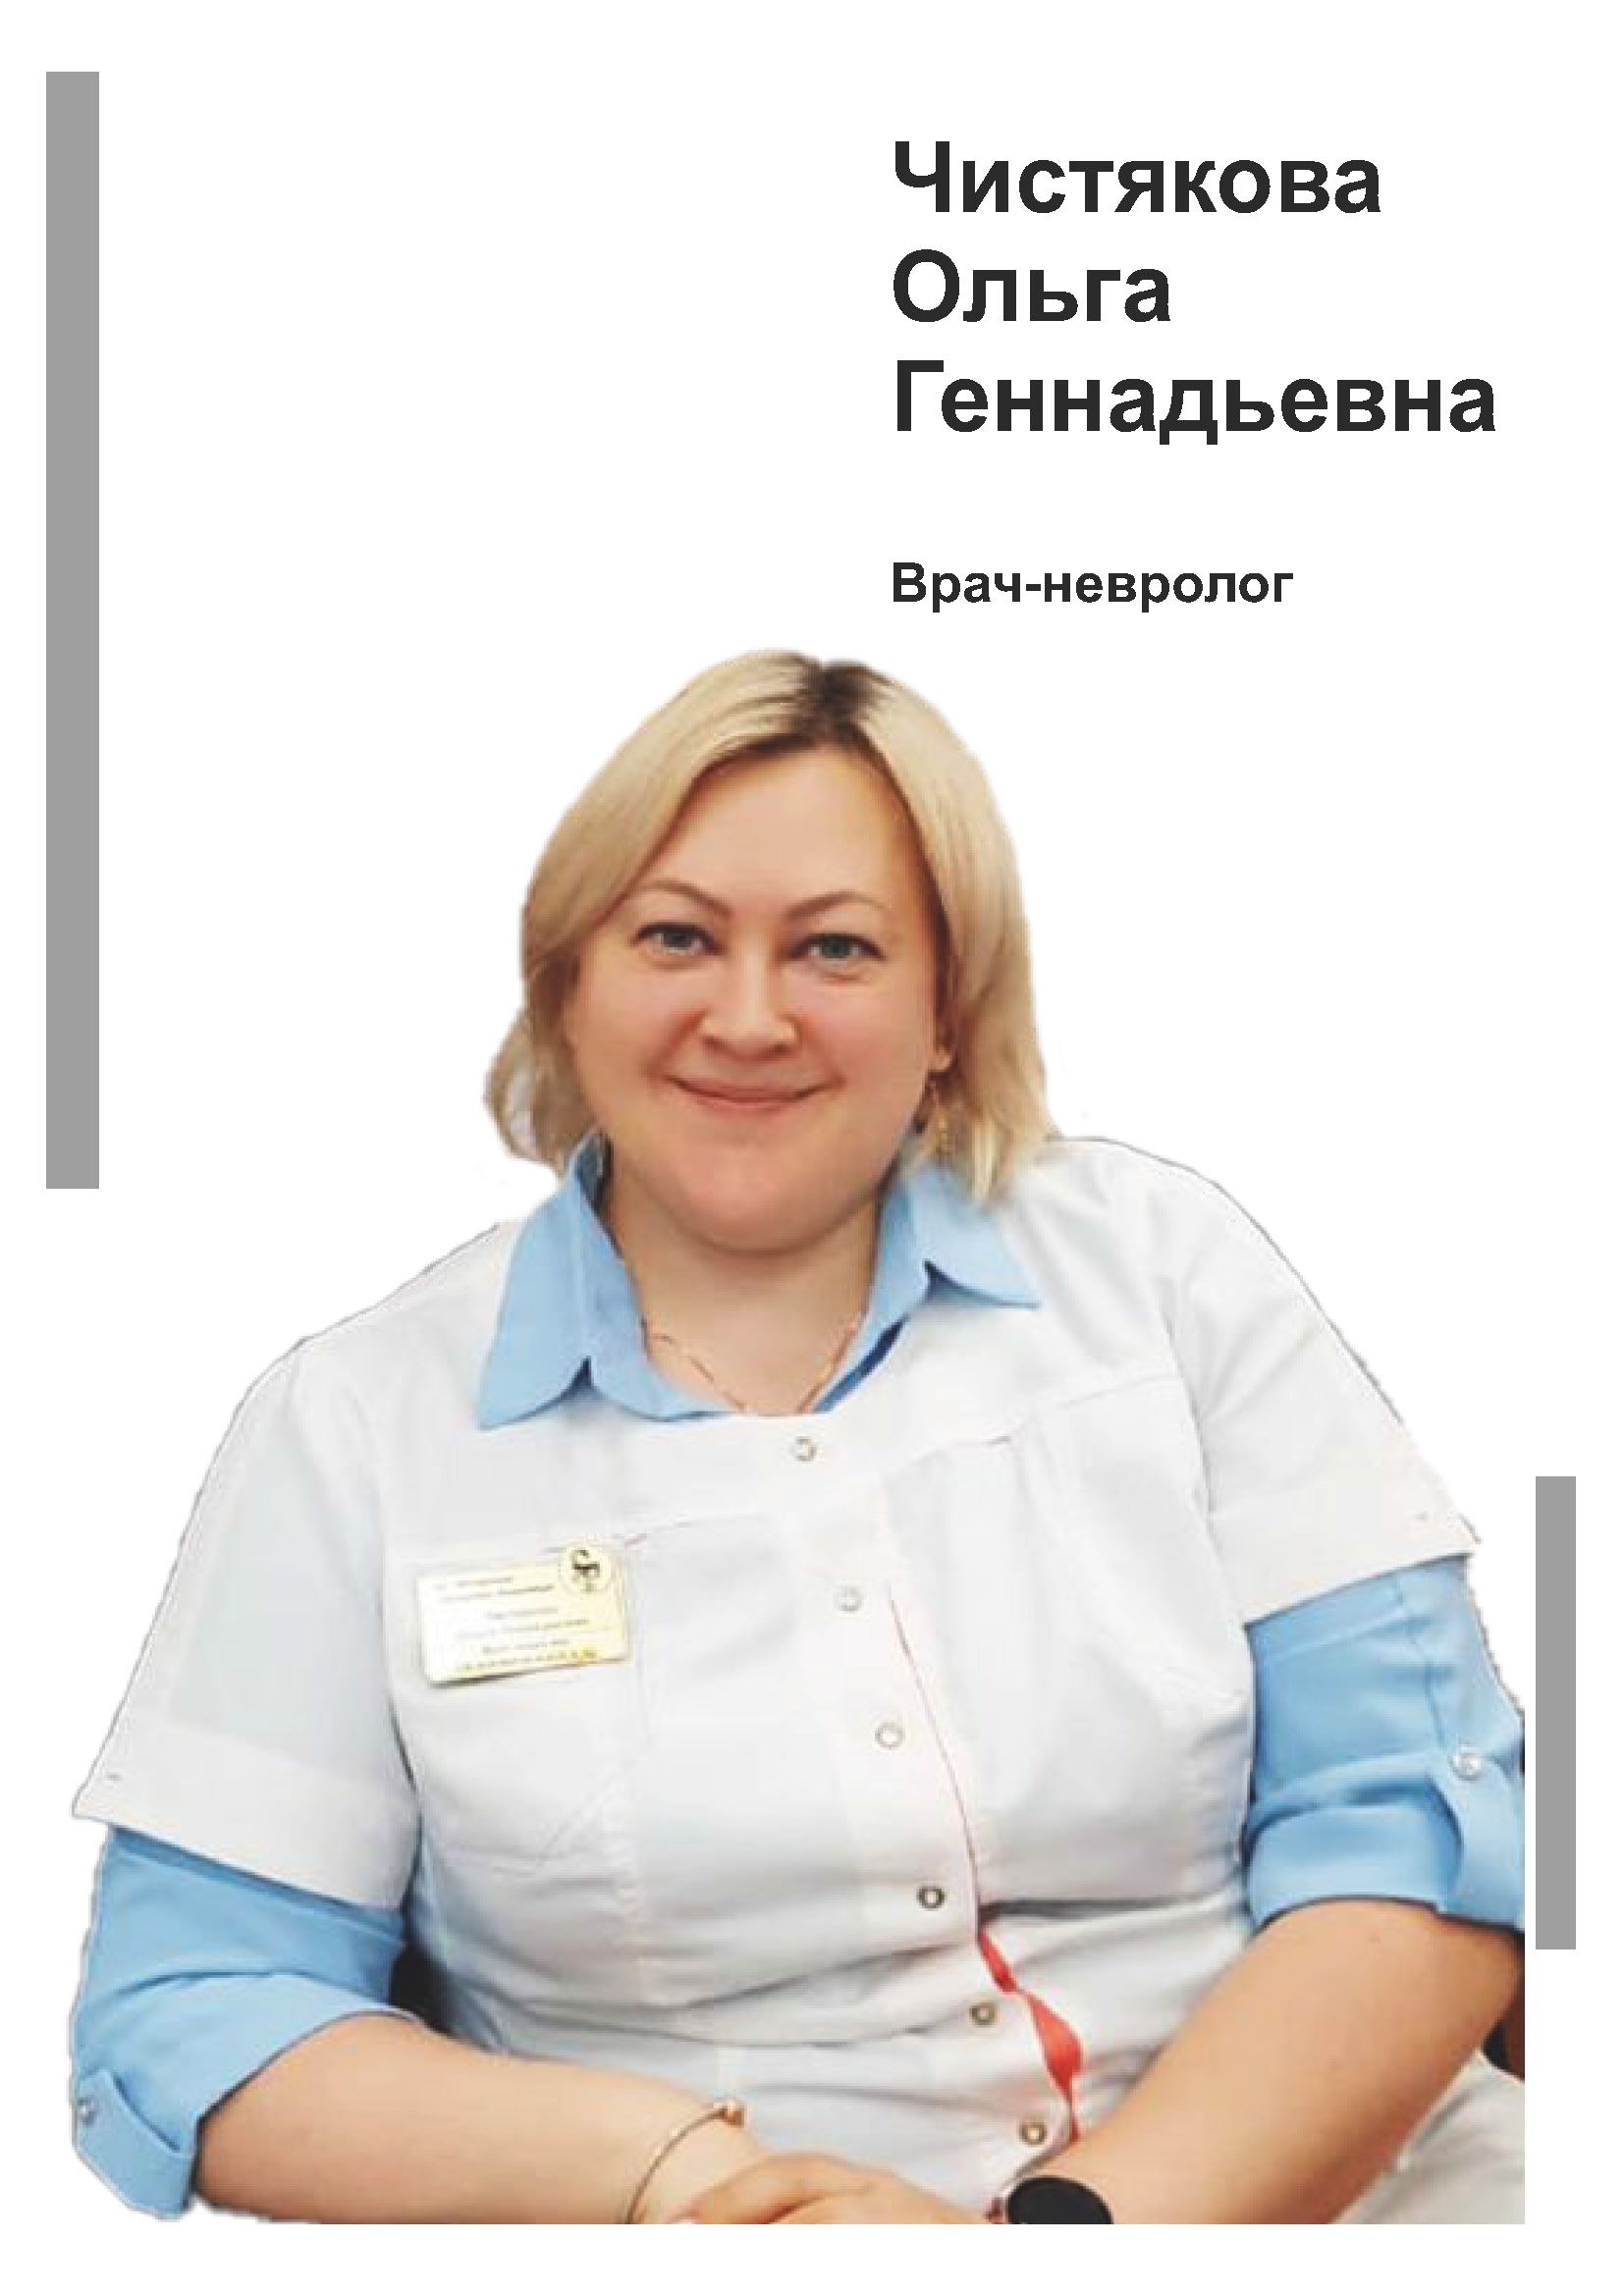 Чистякова Ольга Геннадьевна - врач невролог в клинике Lezaffe г. Югорск